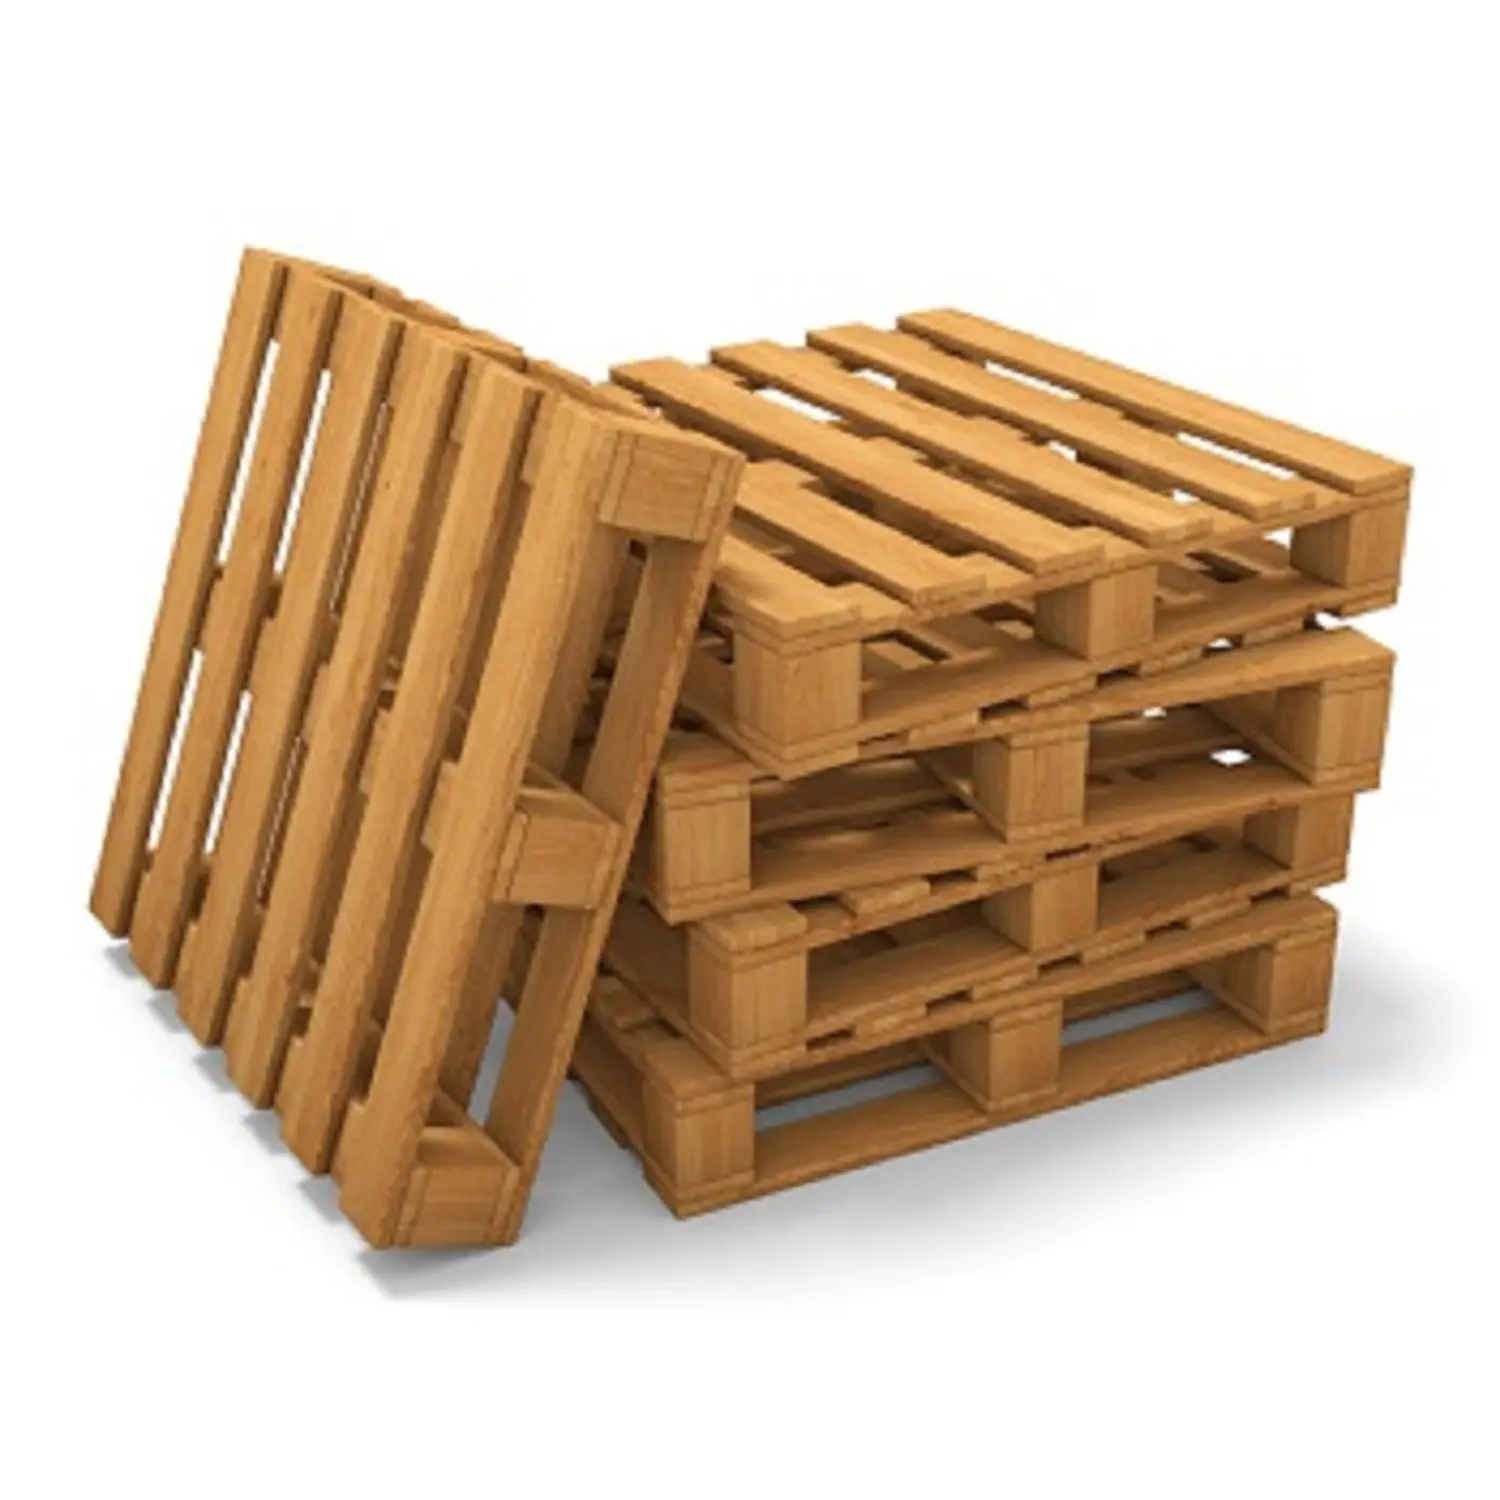 Linea di produzione Pallet scatola di legno Pallet di legno di alta qualità prezzo competitivo imballaggio personalizzato da produttore USA